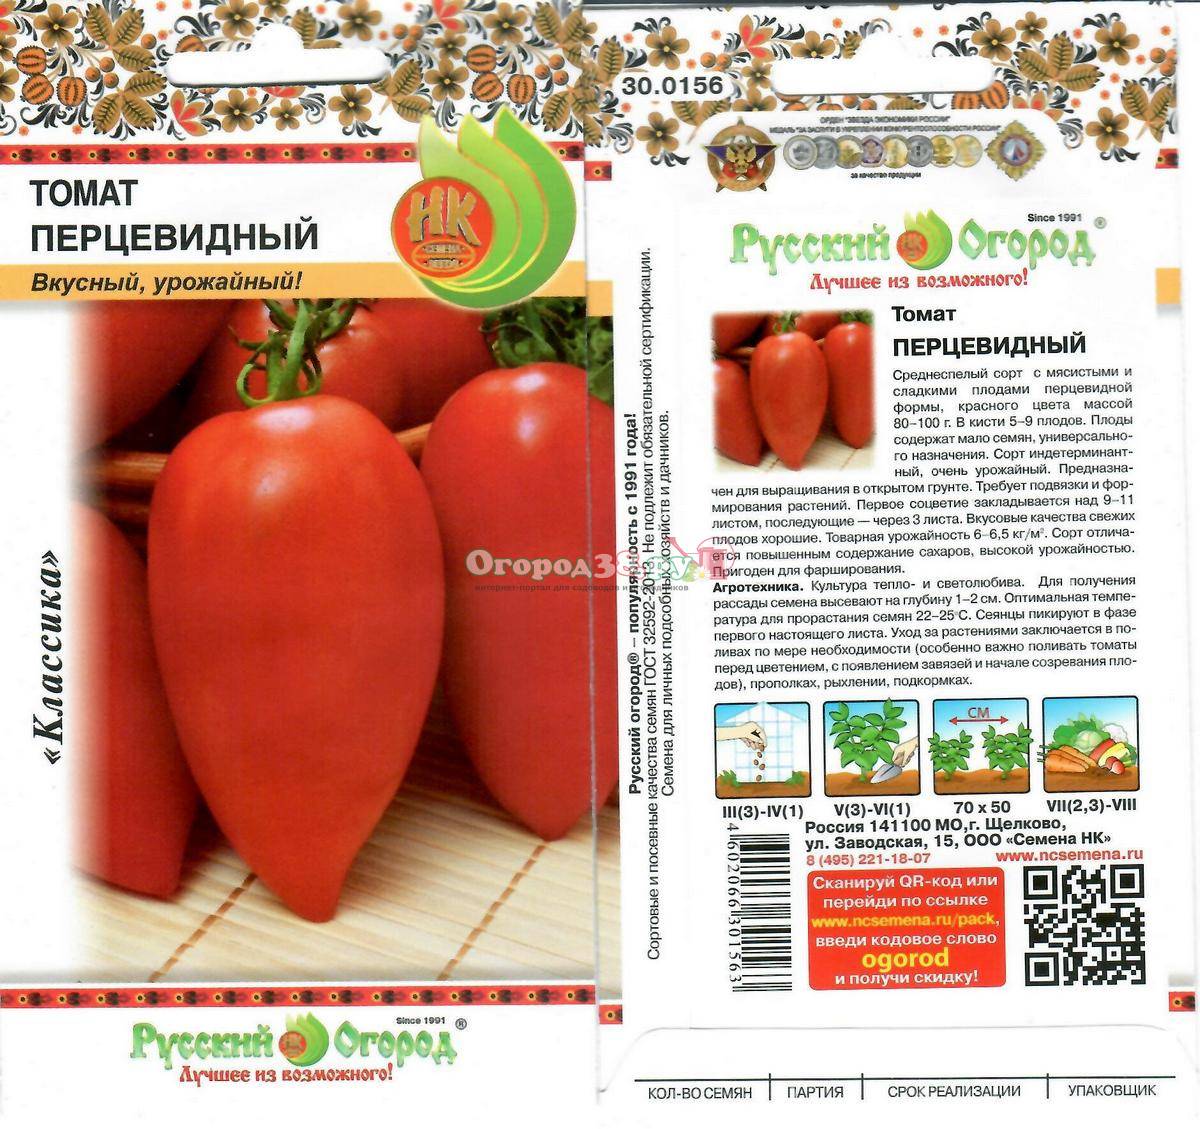 томат перцевидный полосатый описание сорта фото